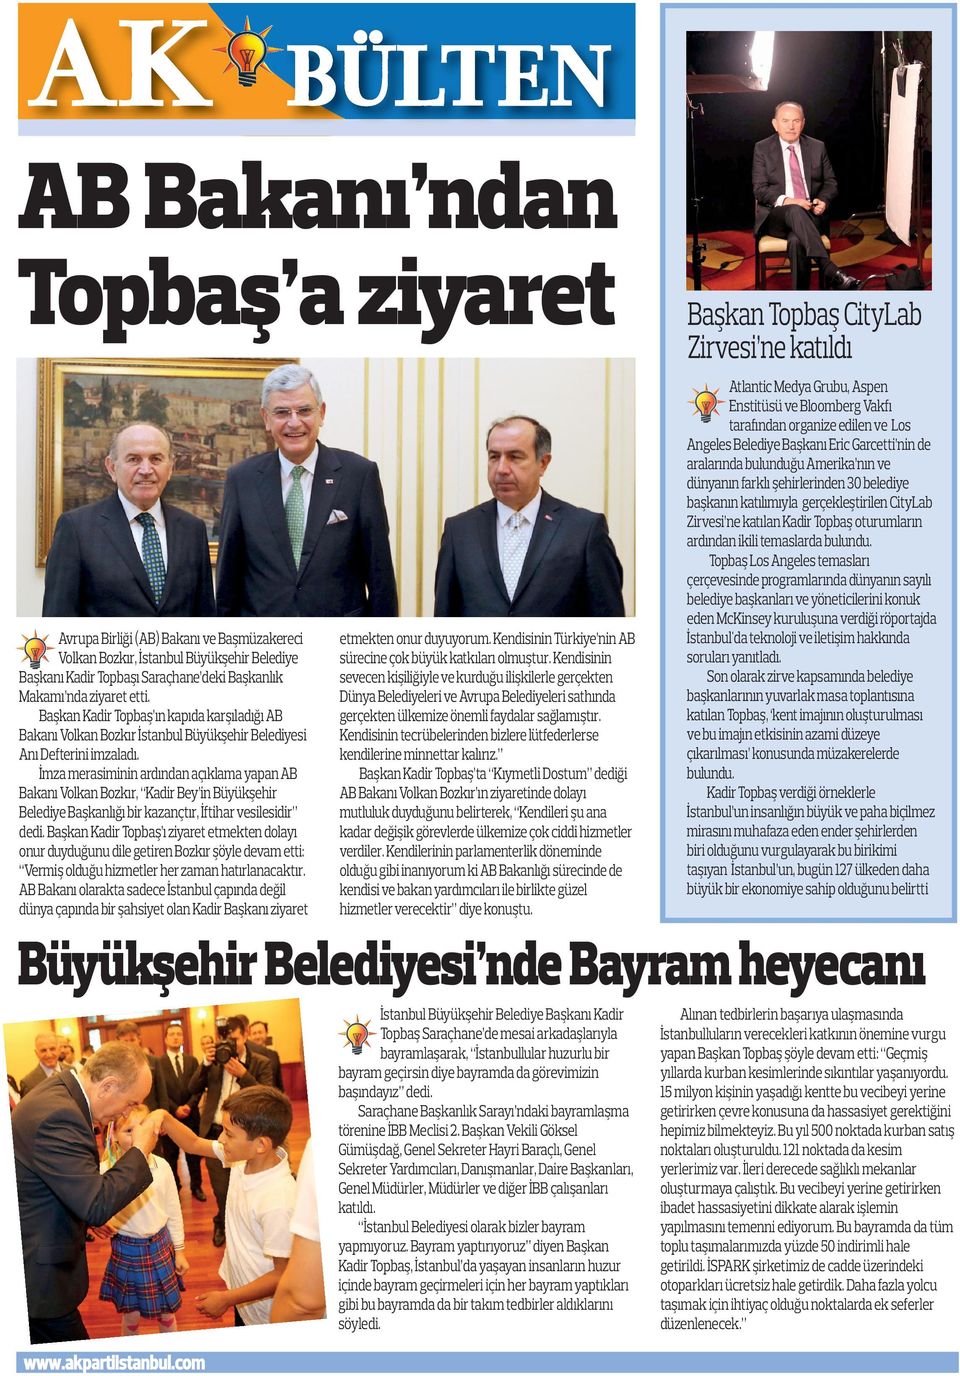 İmza merasiminin ardından açıklama yapan AB Bakanı Volkan Bozkır, Kadir Bey in Büyükşehir Belediye Başkanlığı bir kazançtır, İftihar vesilesidir dedi.